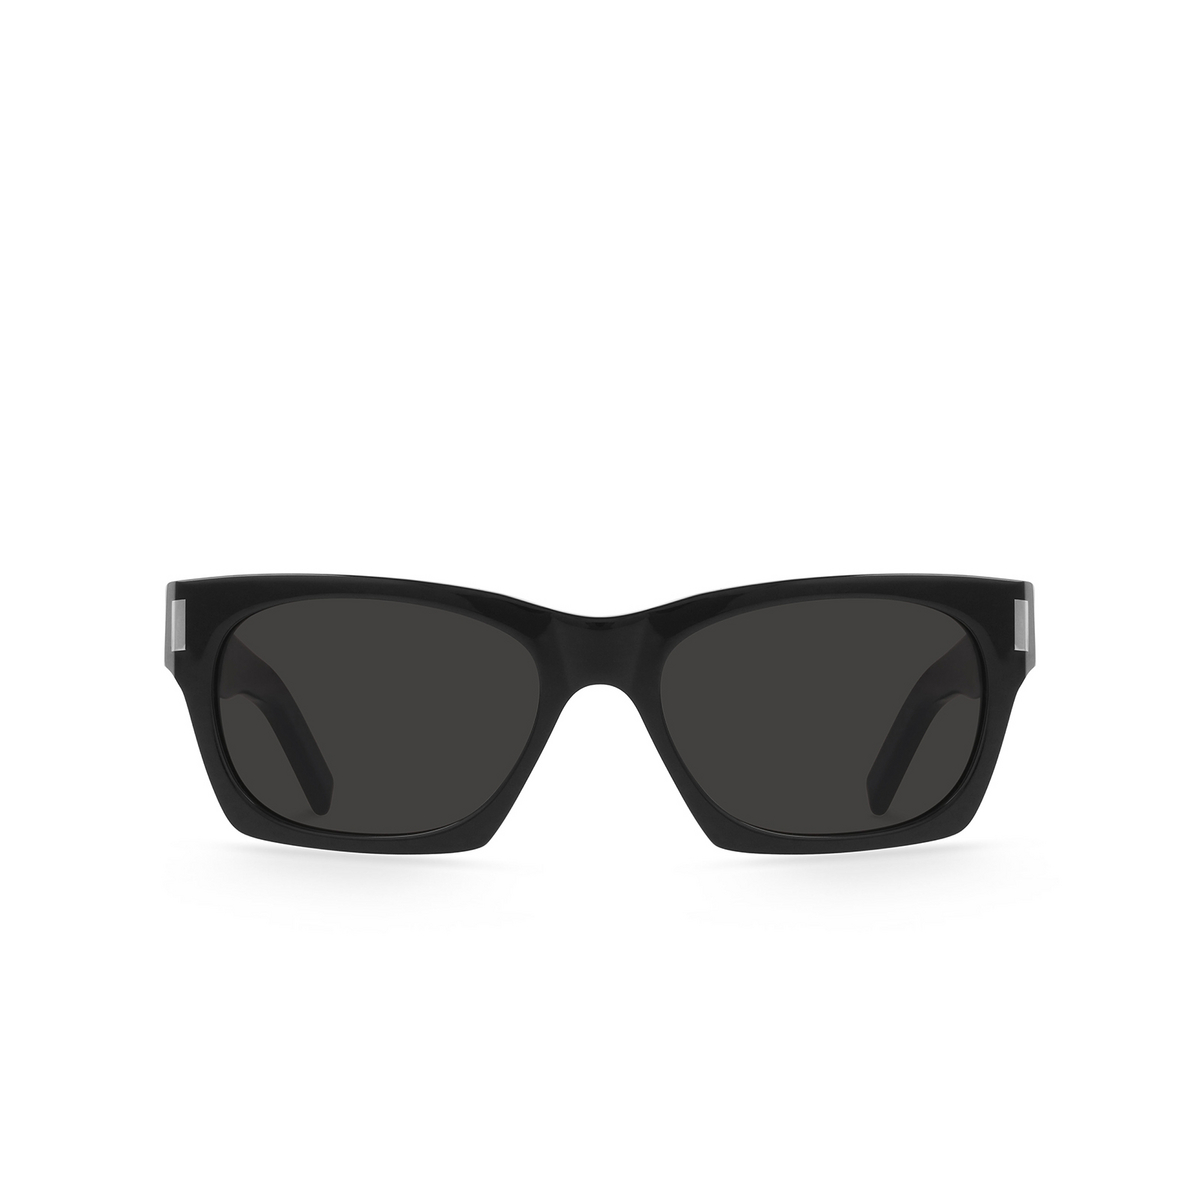 Saint Laurent SL 402 Sunglasses 001 Black - front view